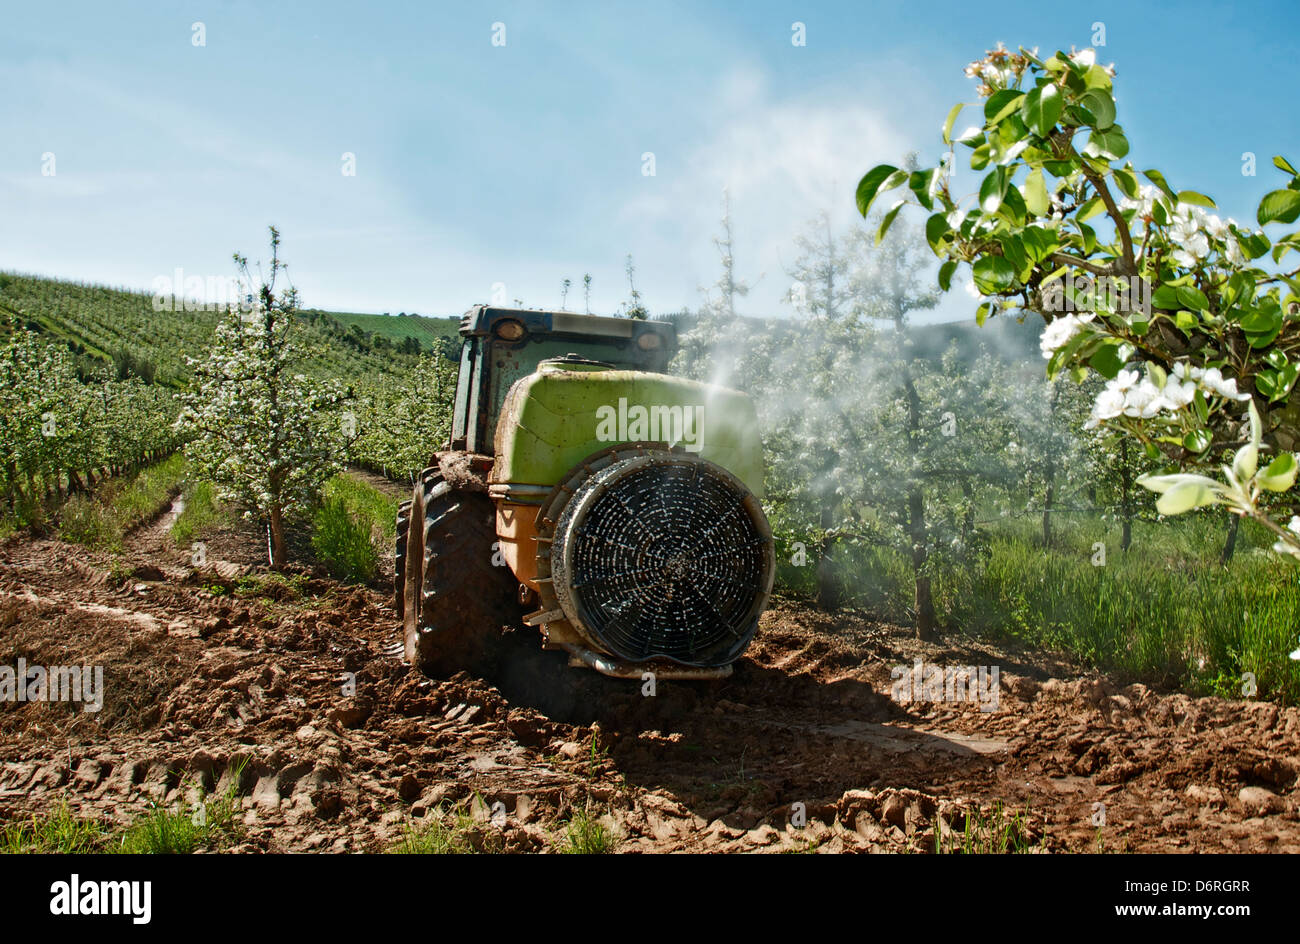 A-Dos-Francos, Portugal, avril 2013. Les vergers de poires Rocha sont en fleurs. Les agriculteurs à faire face à les protéger contre les ravageurs. Banque D'Images